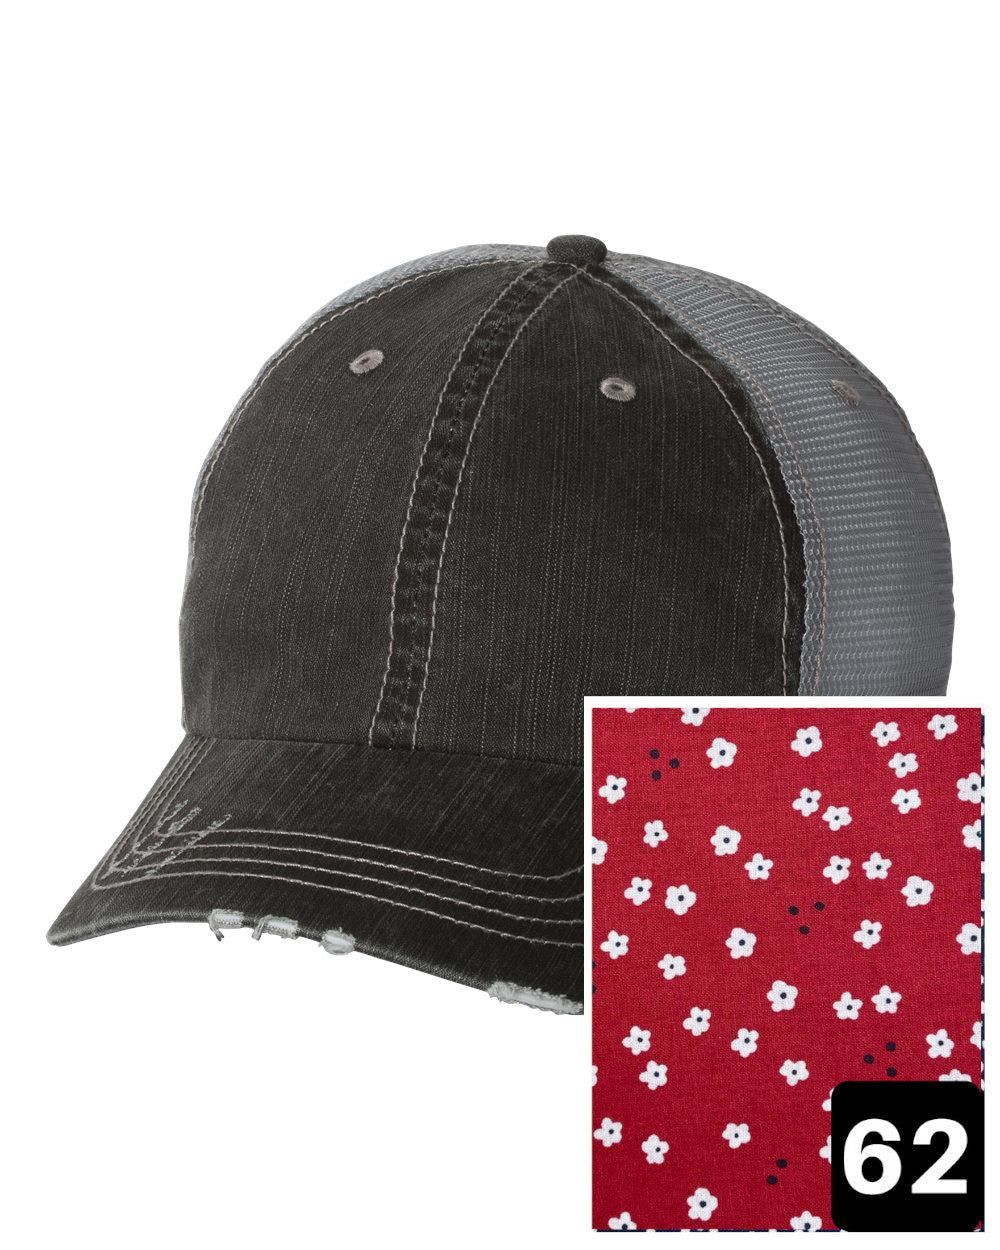 Louisiana Hat | Gray Distressed Trucker Cap | Many Fabric Choices